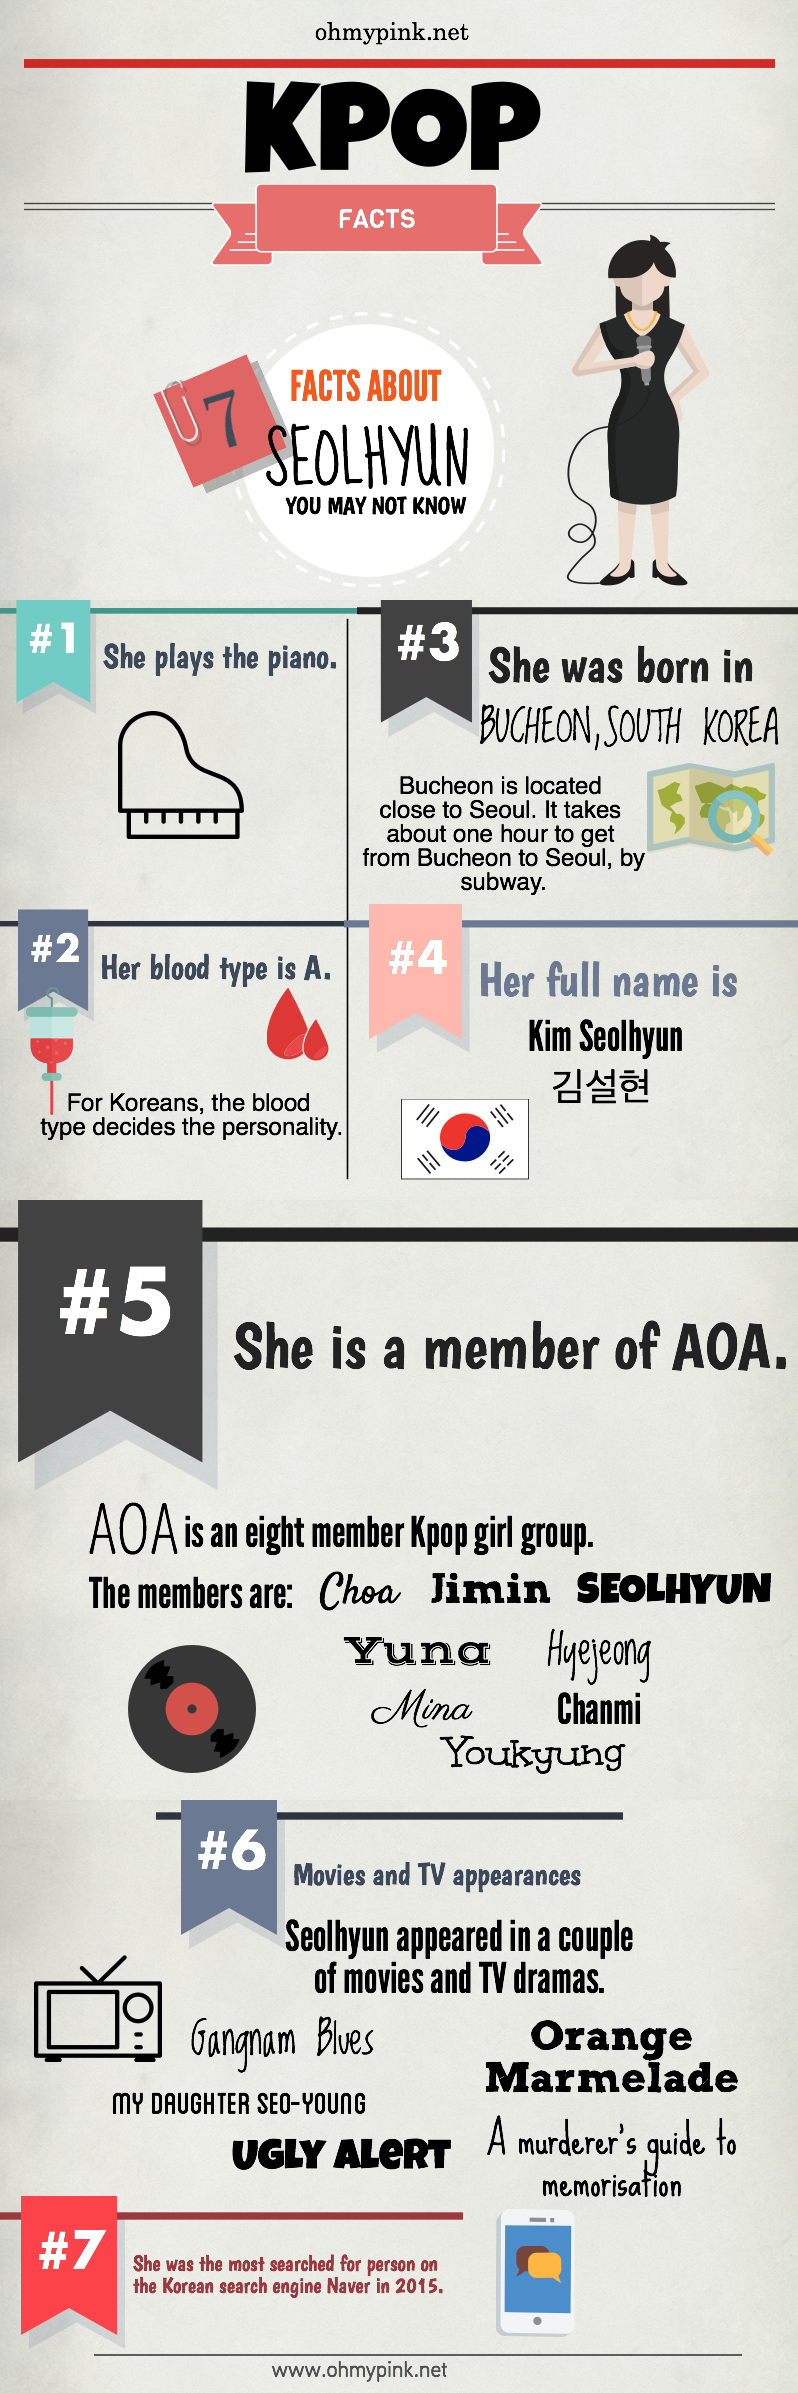 Seolhyun AOA